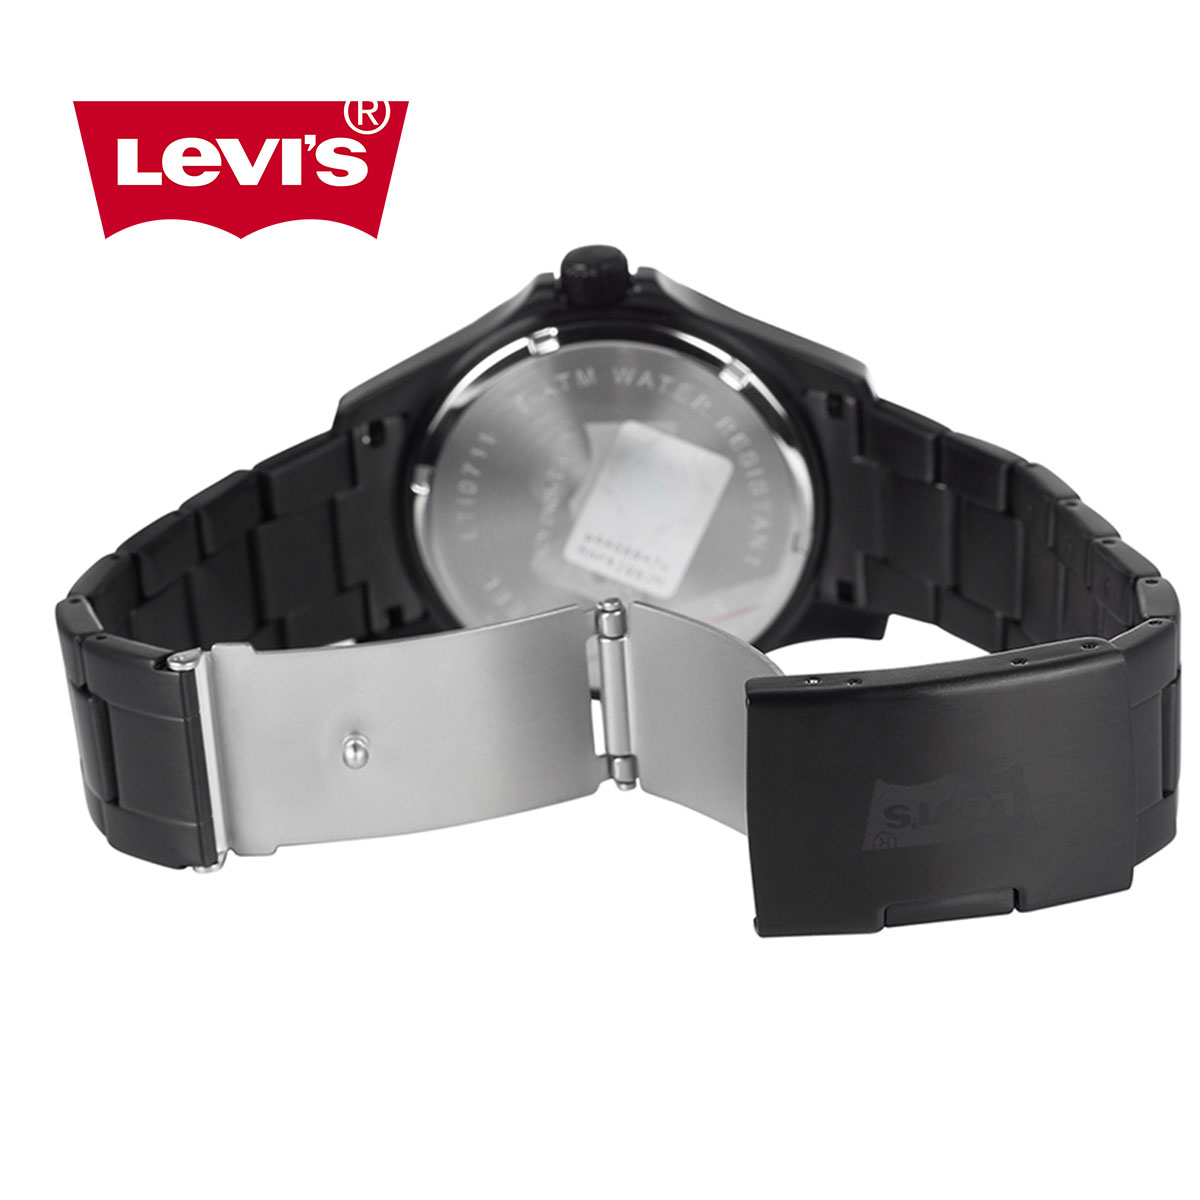 Đồng hồ nam Levis LTI07 chống nước hiệu quả